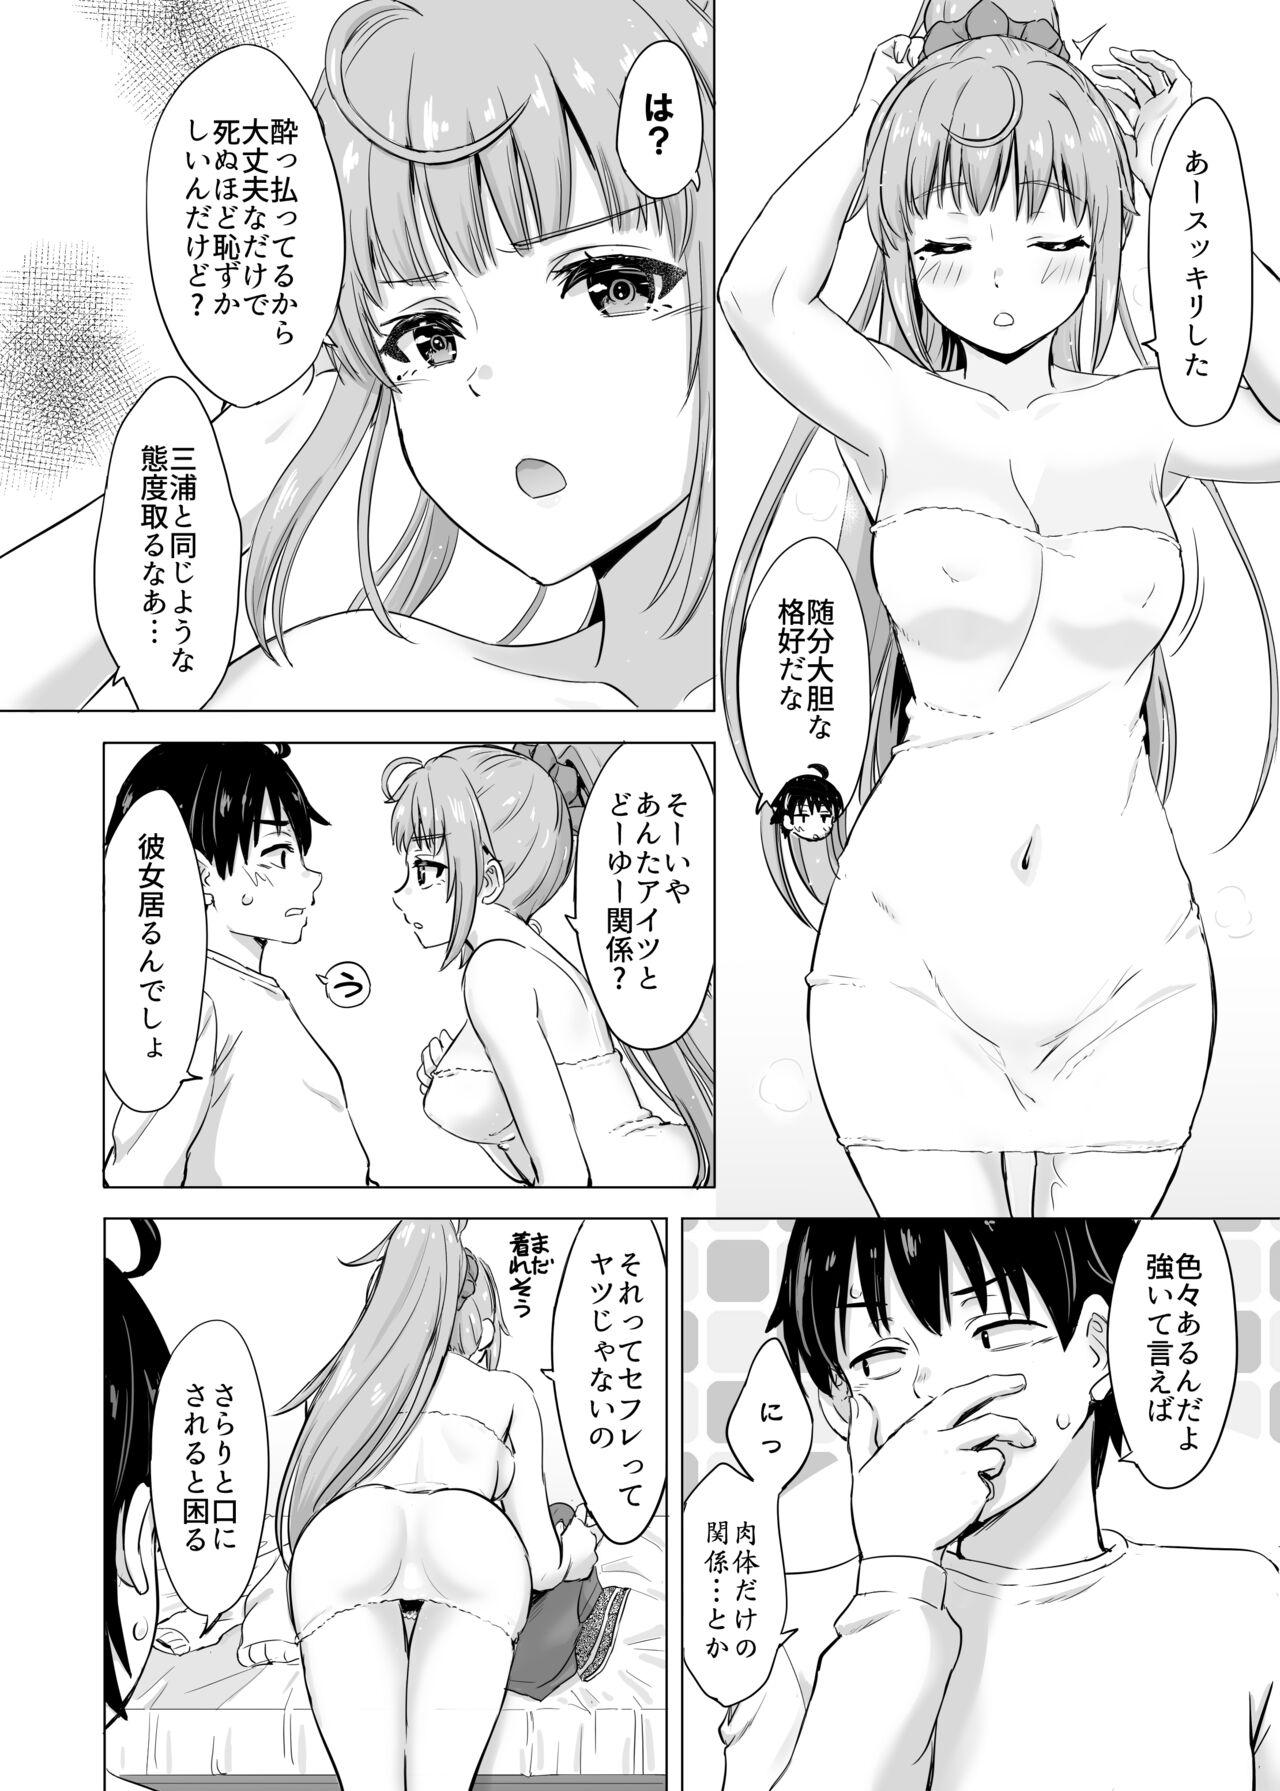 Camshow Ashi-san Saki Saki Manga - Yahari ore no seishun love come wa machigatteiru Rope - Page 7